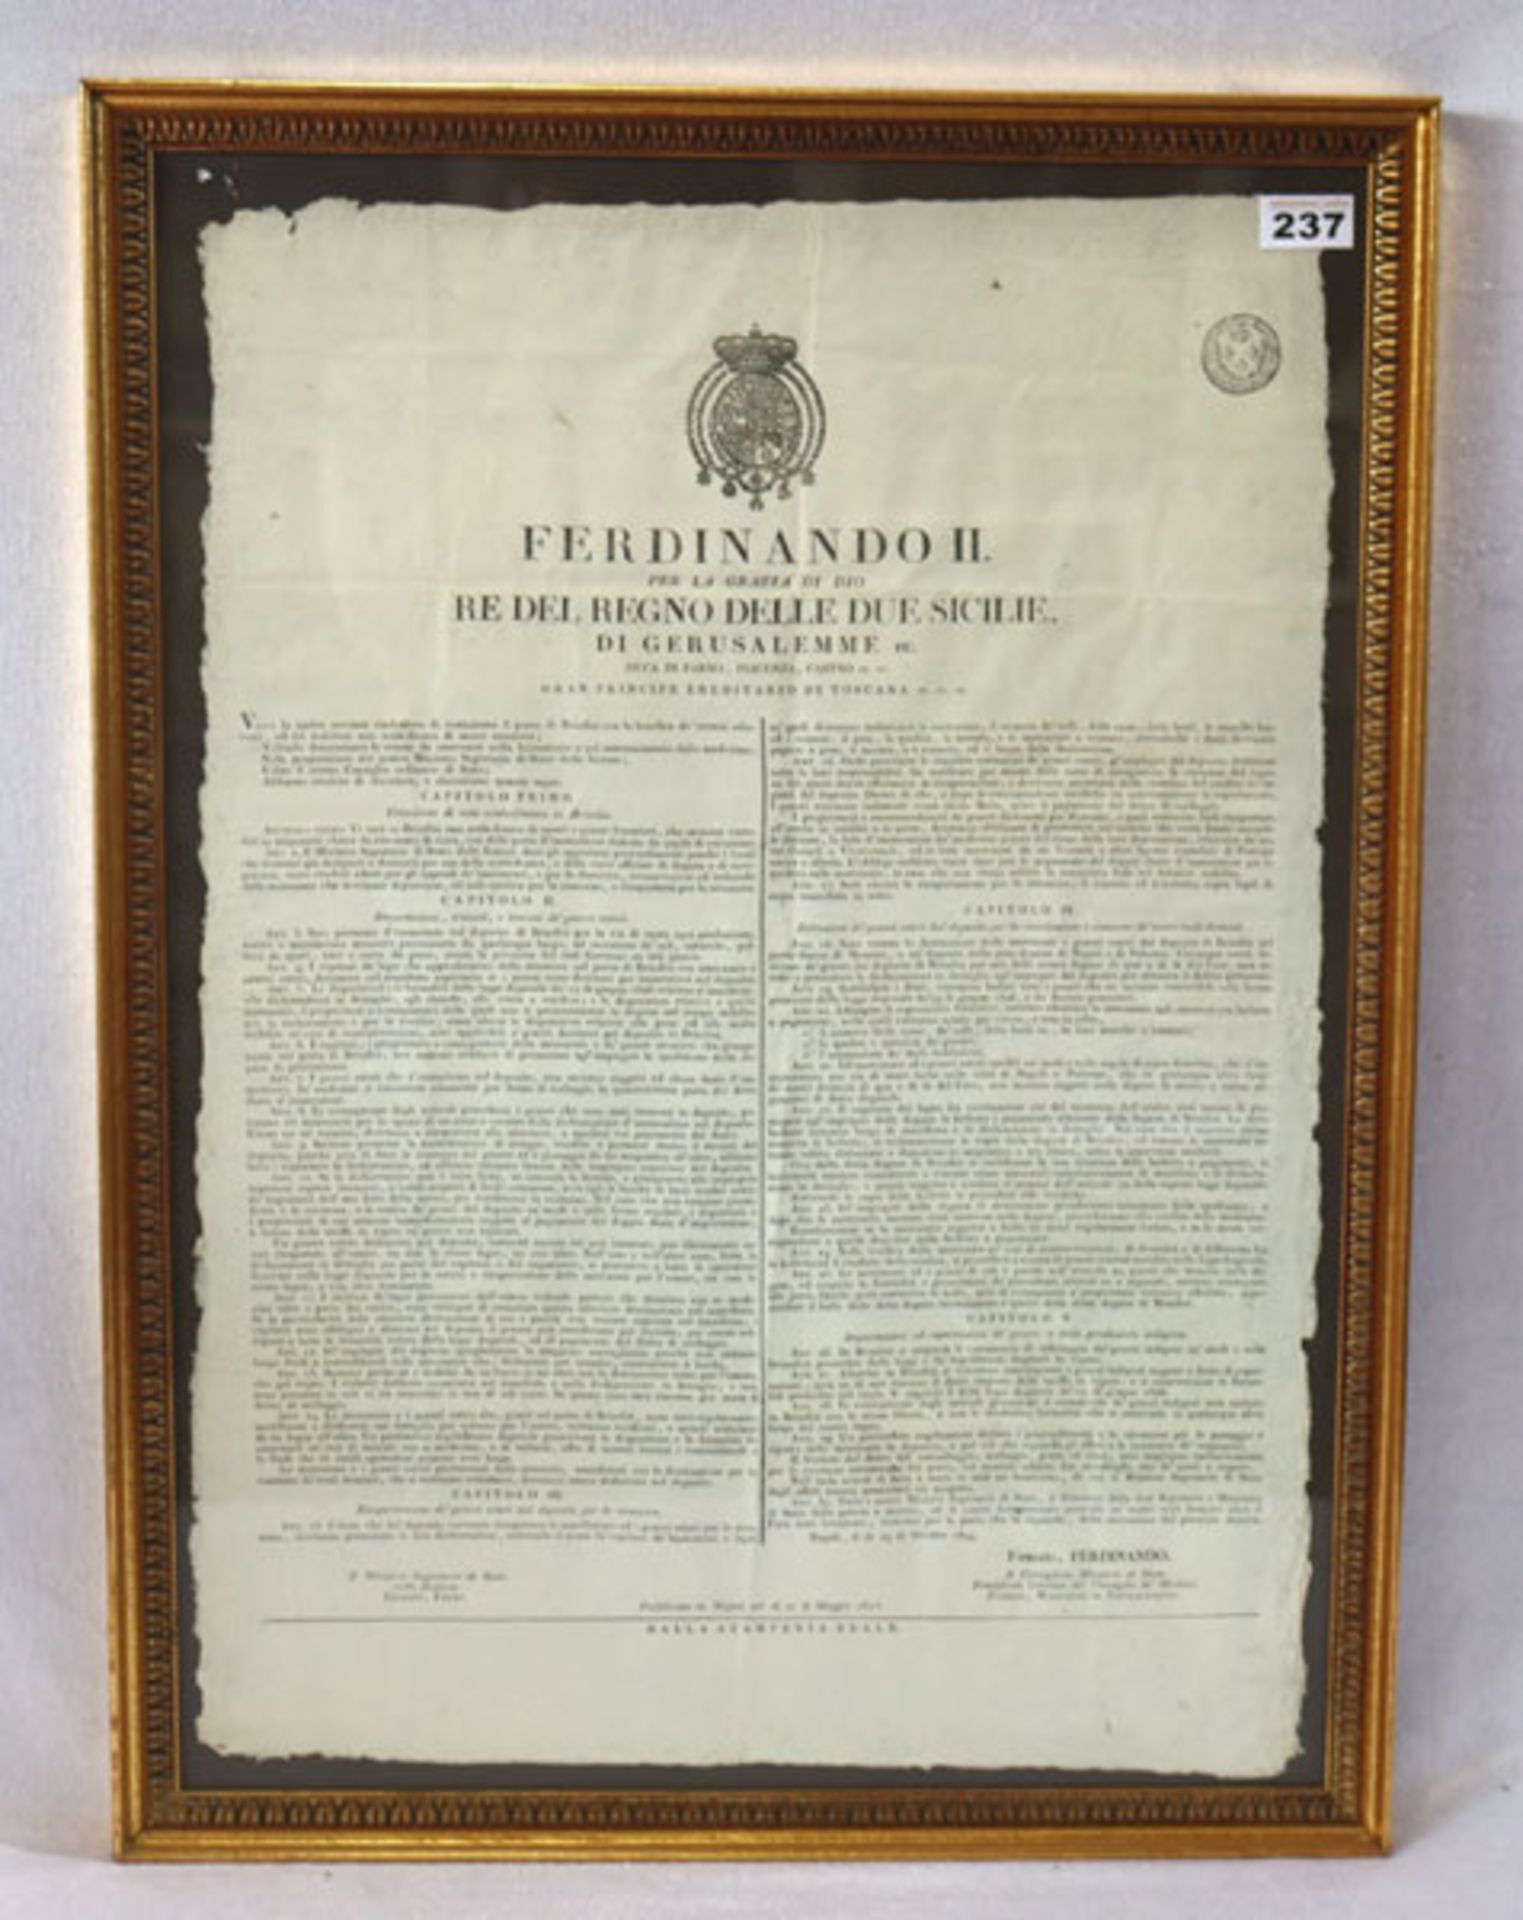 Druck einer Proklamation von Ferninando II, datiert 1845, unter Glas gerahmt, Rahmen beschädigt,